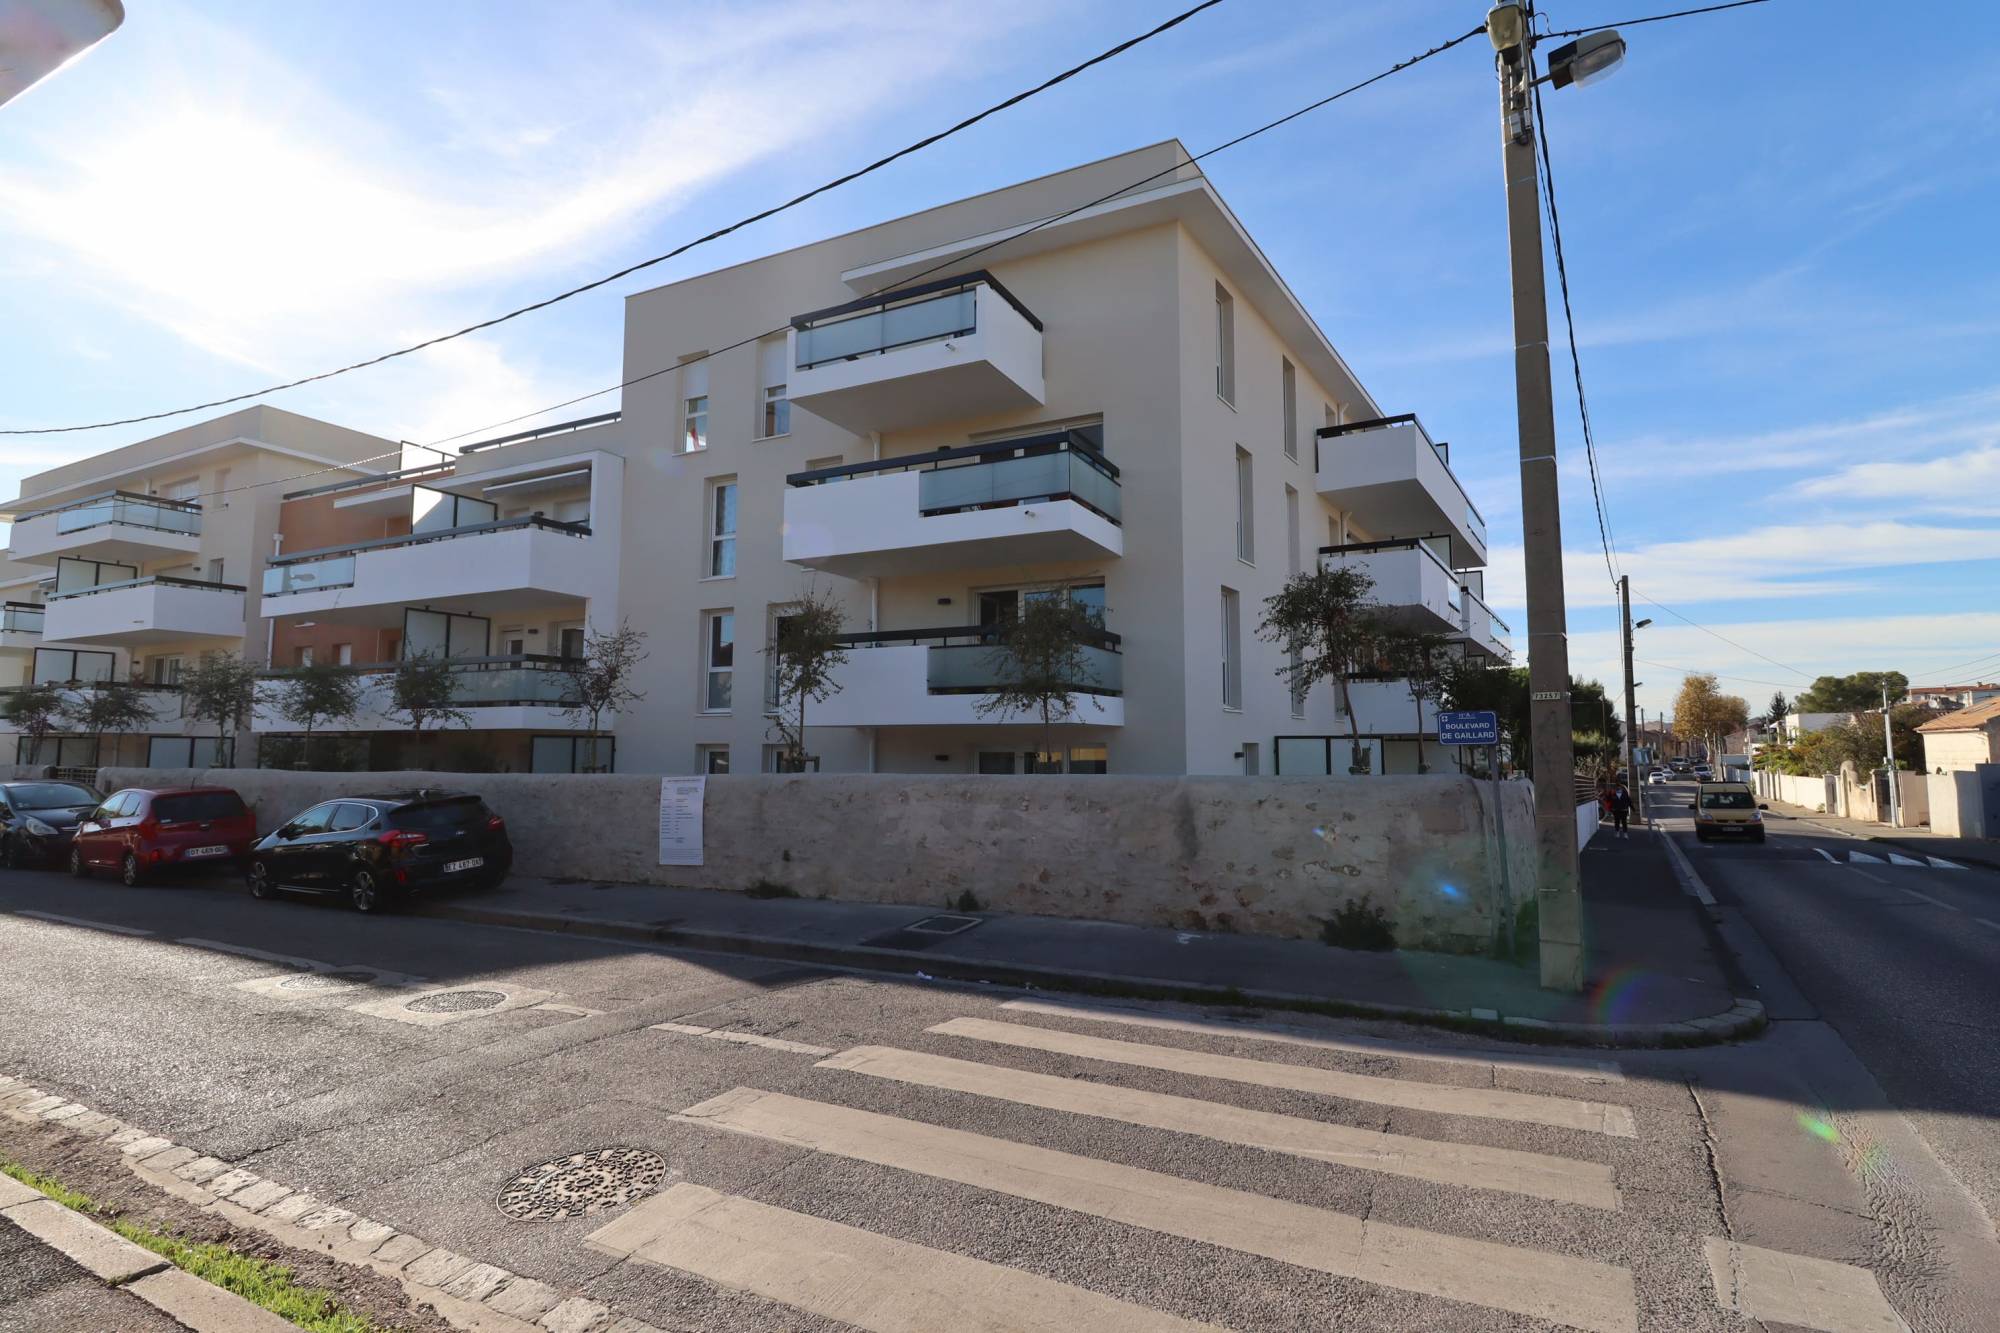 A la location appartement 3 pièces de 63 m2 avec terrasse et deux places de parking privatives en plein coeur du village de Bois Luzy 13012 Marseille